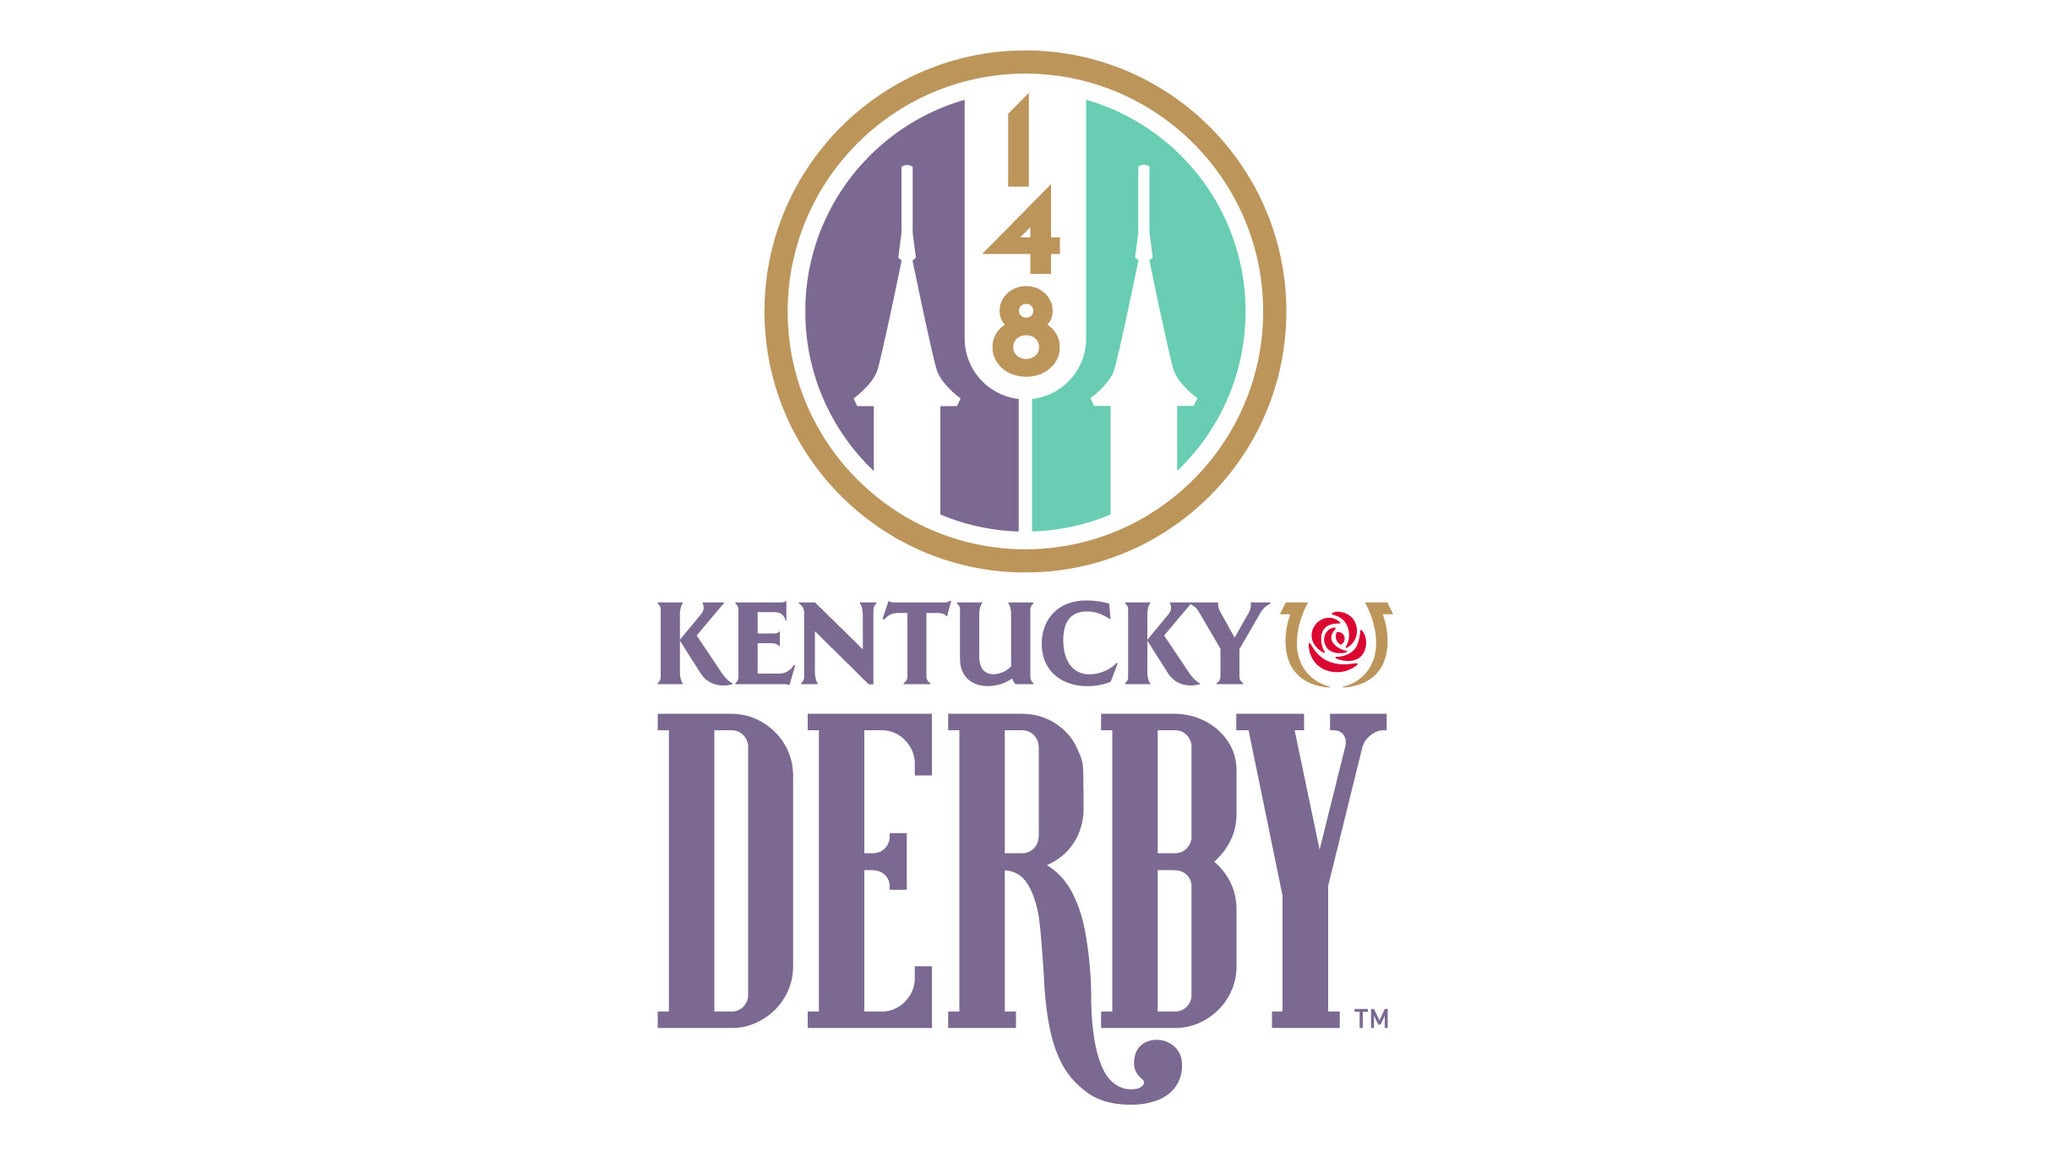 Kentucky Derby Tickets Single Game Tickets & Schedule